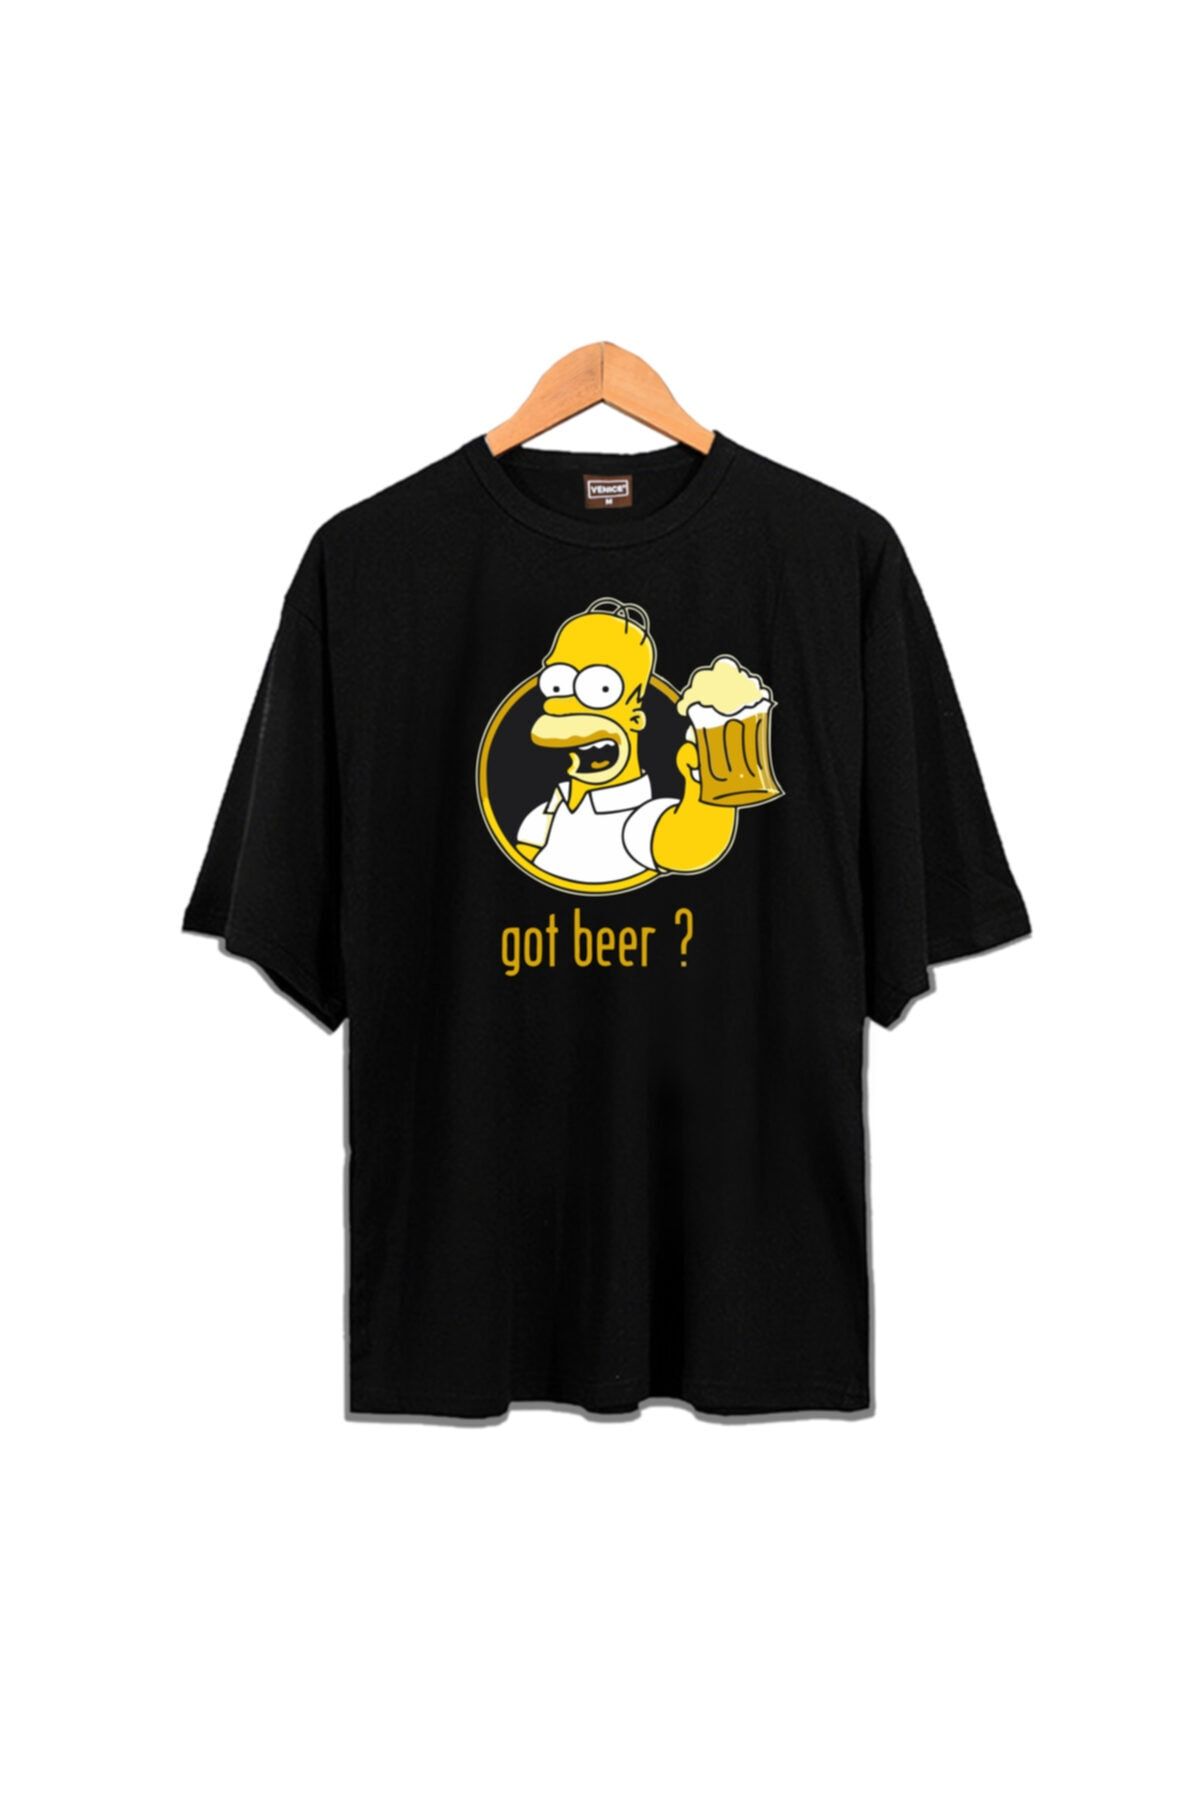 Venice Zokawear - Unisex Oversize Got Beer ? Homer Simpson T-shirt